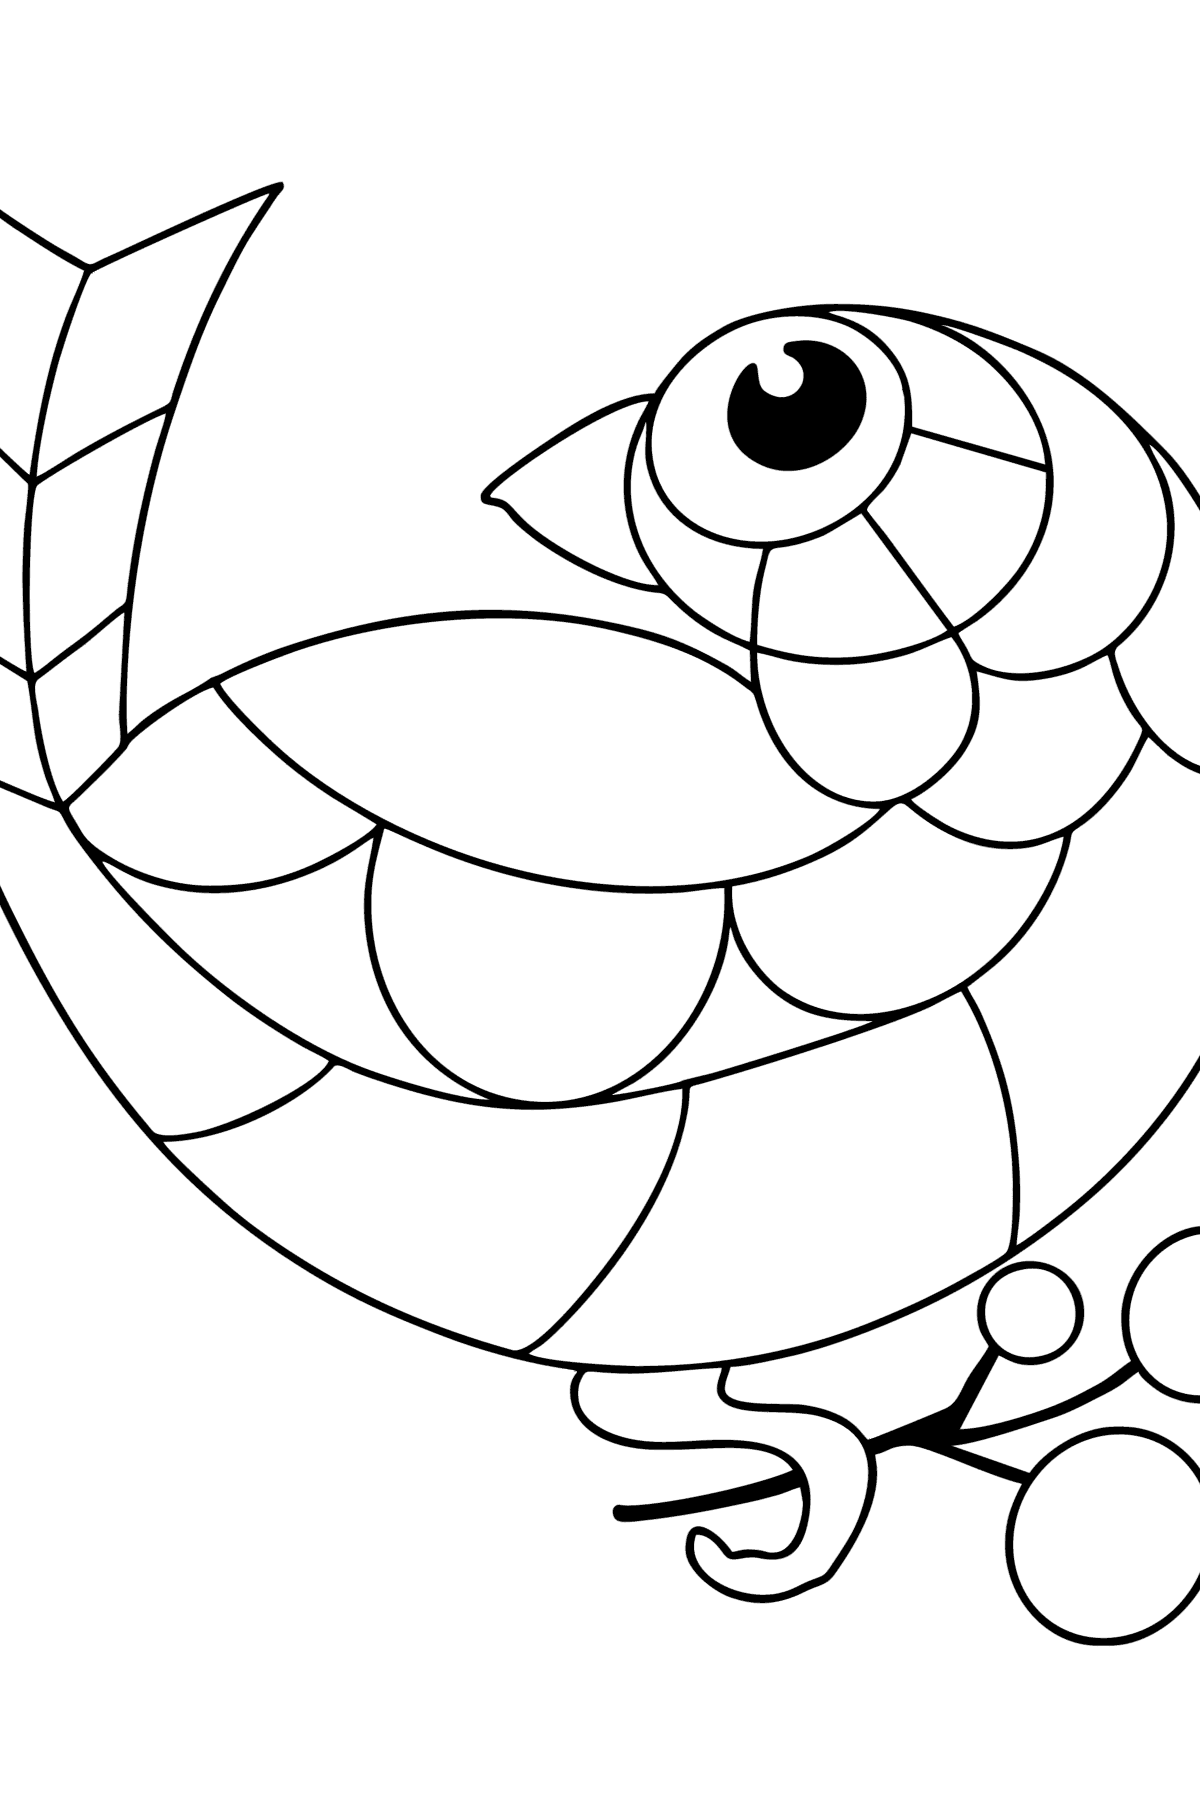 Dibujo de Pájaro antiestrés para colorear - Dibujos para Colorear para Niños